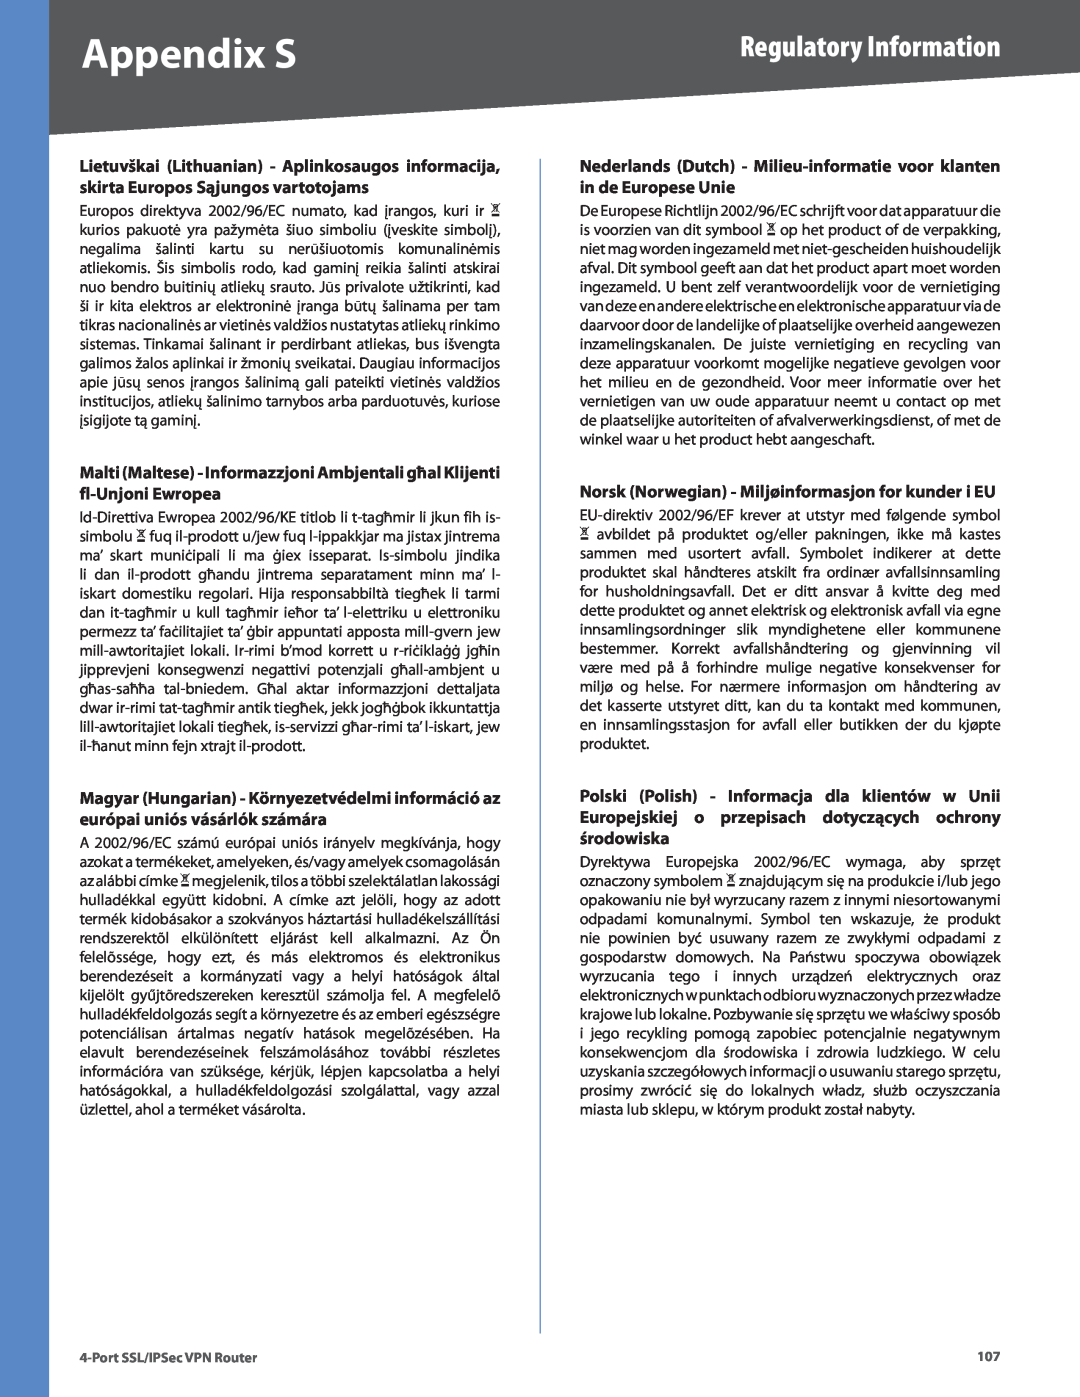 Cisco Systems RVL200 manual Nederlands Dutch - Milieu-informatie voor klanten in de Europese Unie, Appendix S 